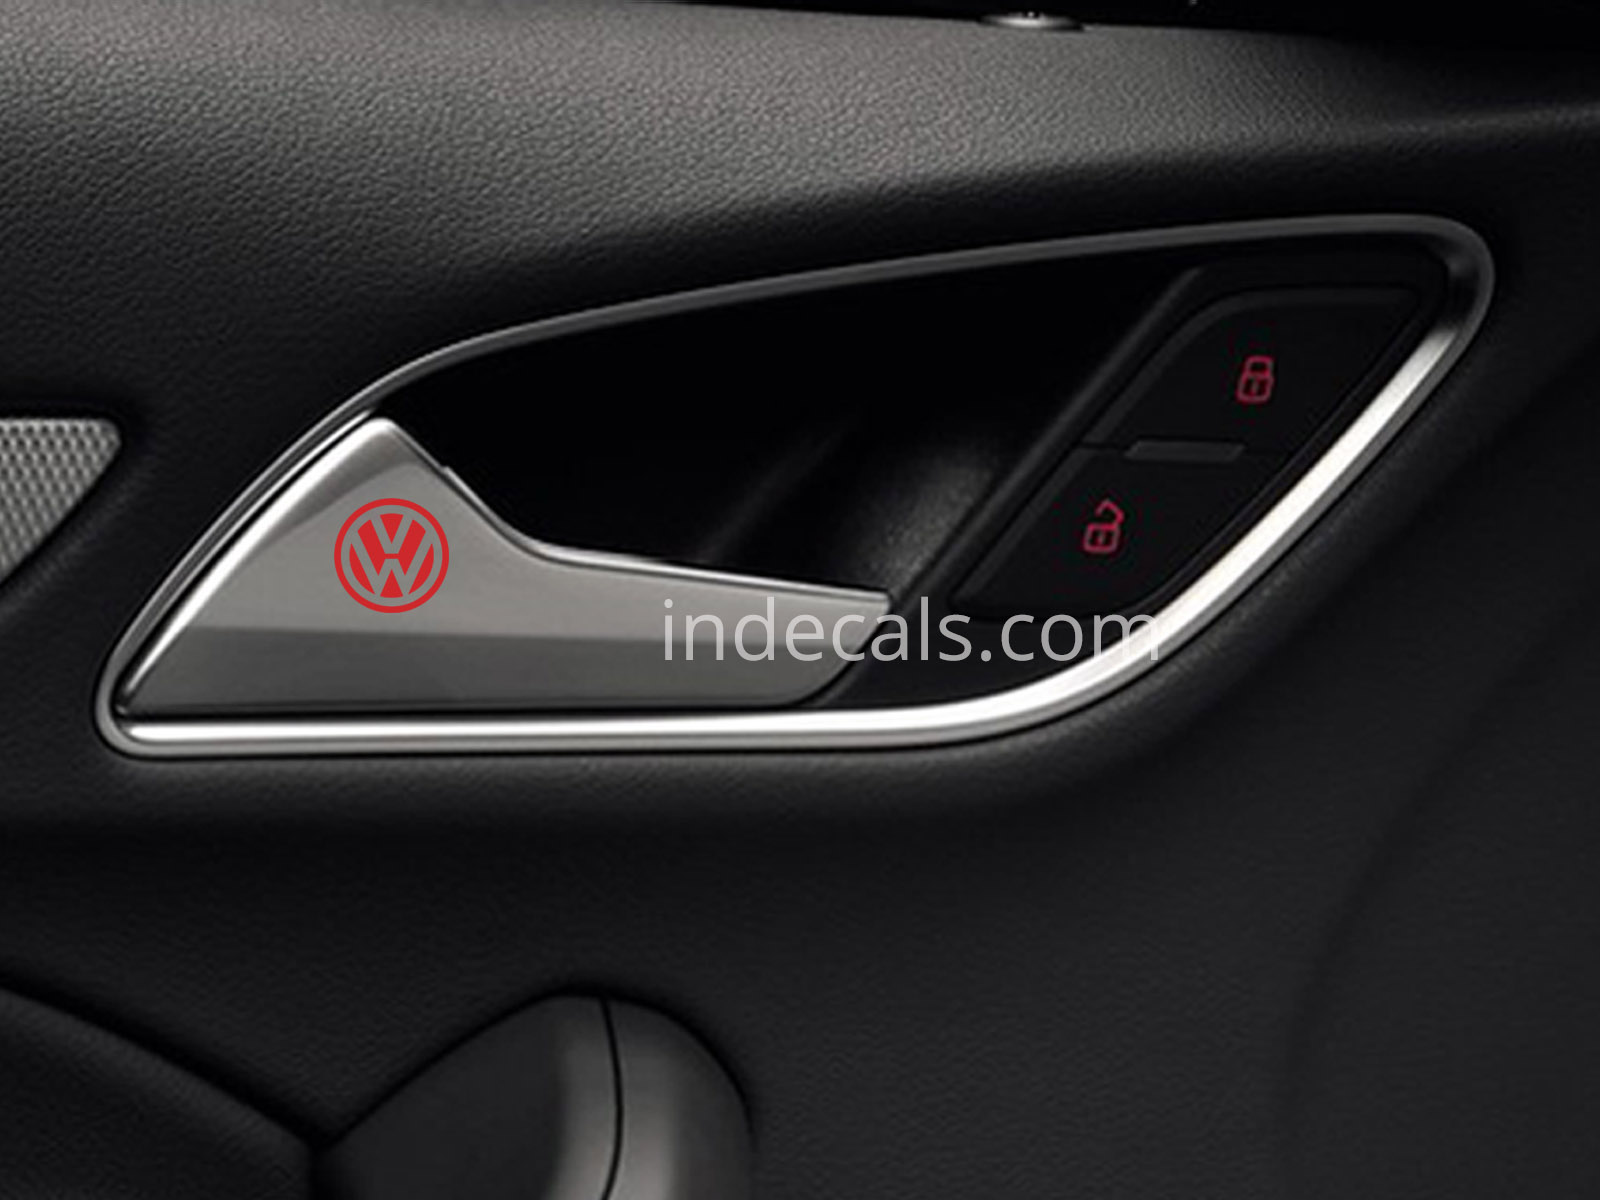 6 x Volkswagen Stickers for Door Handle - Red